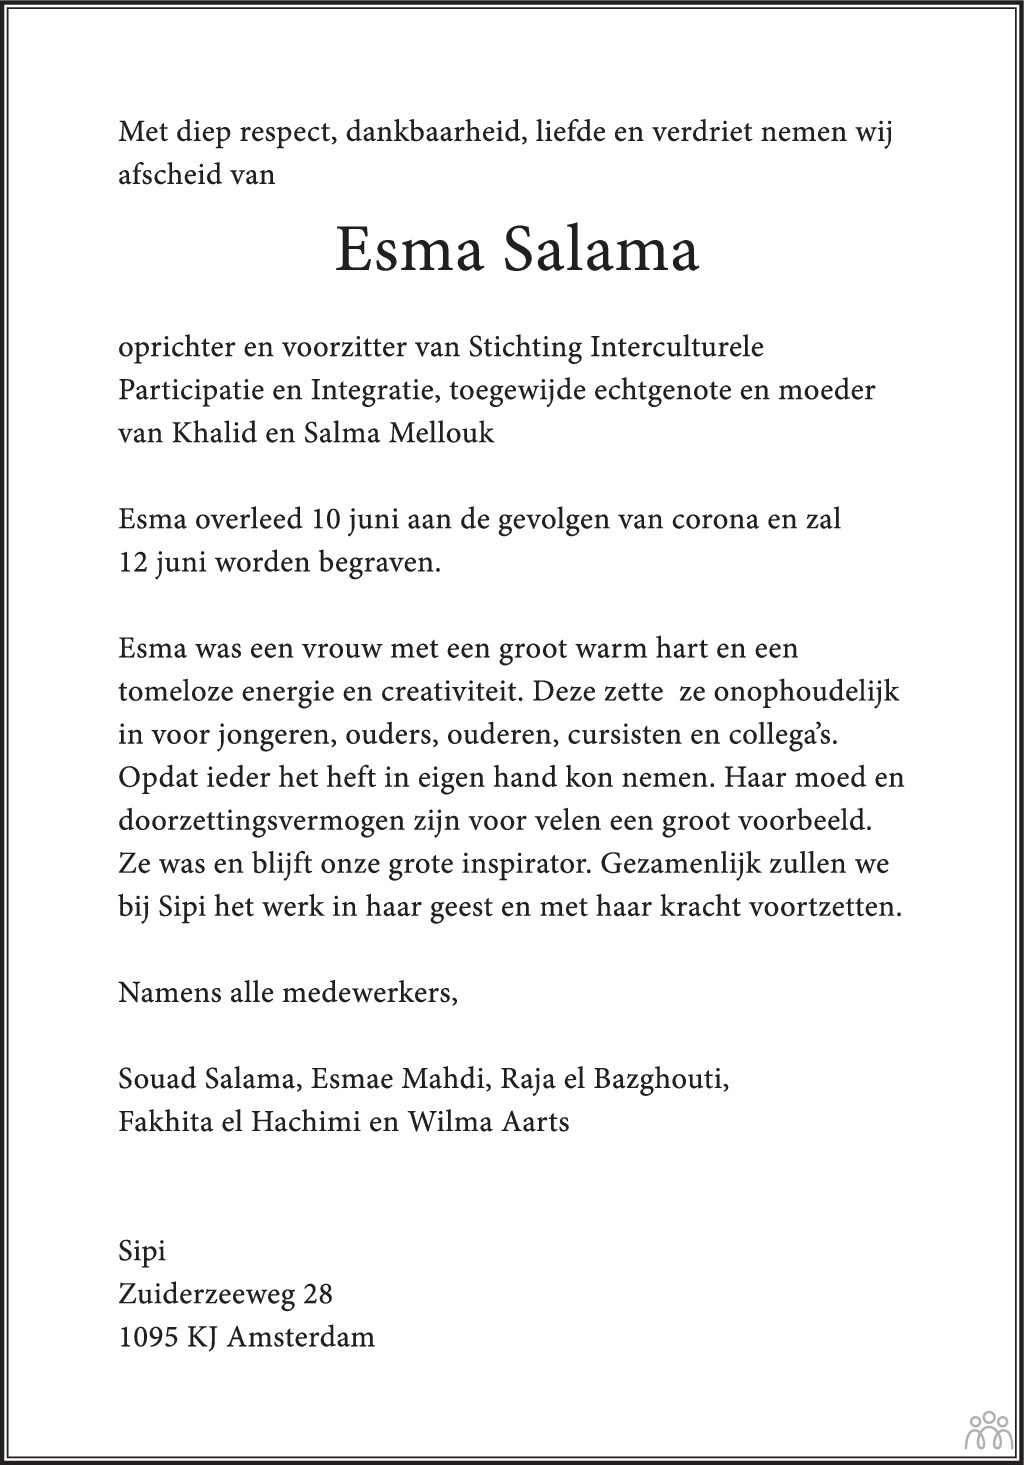 Overlijdensbericht van Esma Salama in Het Parool